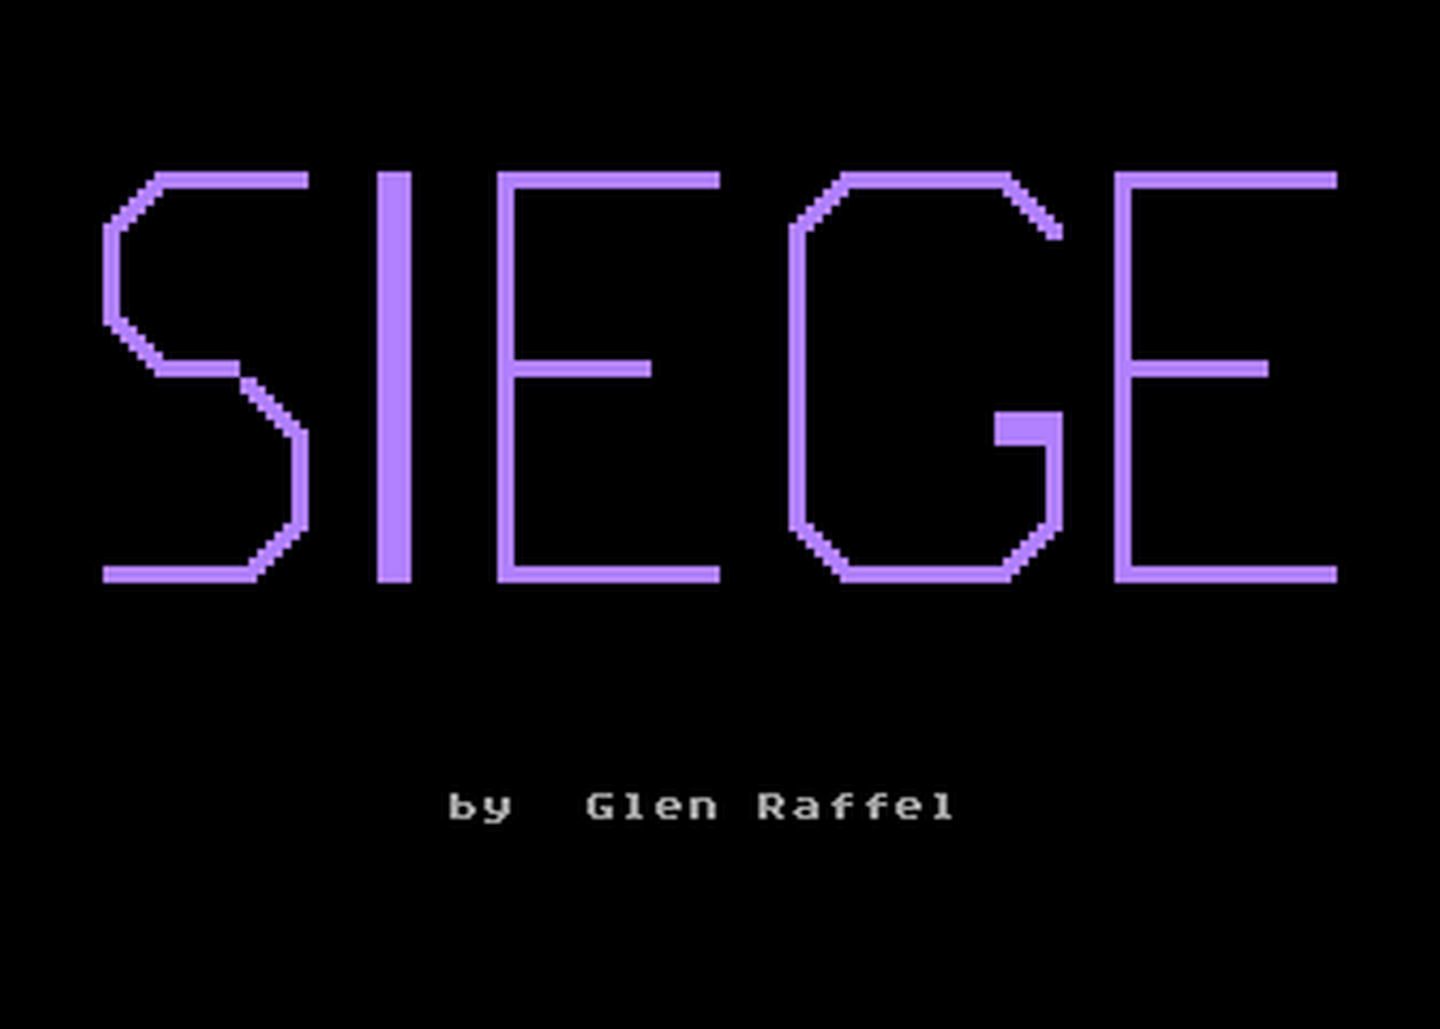 Atari GameBase Siege ANALOG_Computing 1984